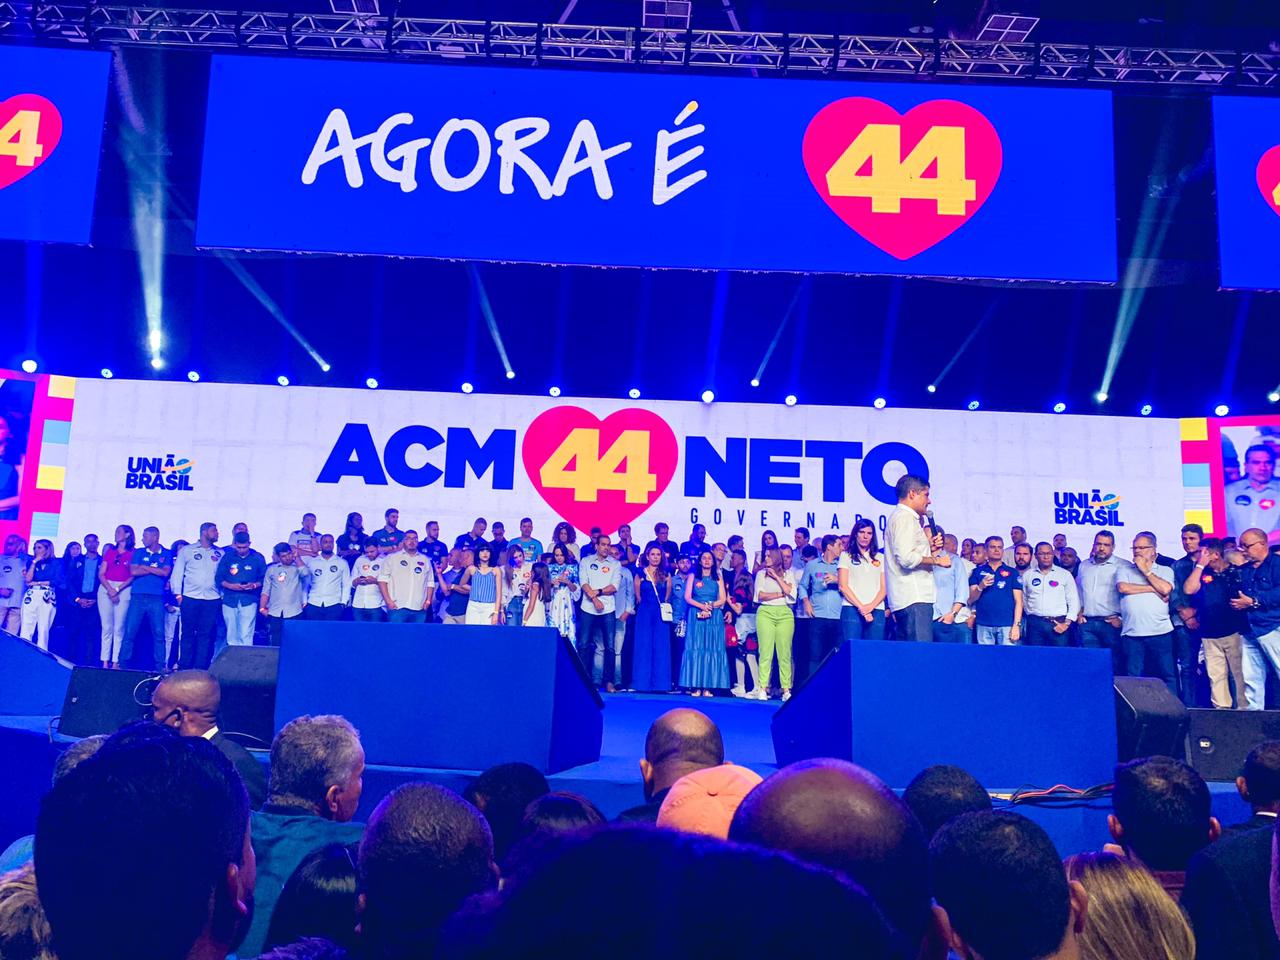 Prefeita de Eunápolis participa da convenção que lançou ACM Neto como candidato a governador da Bahia 72